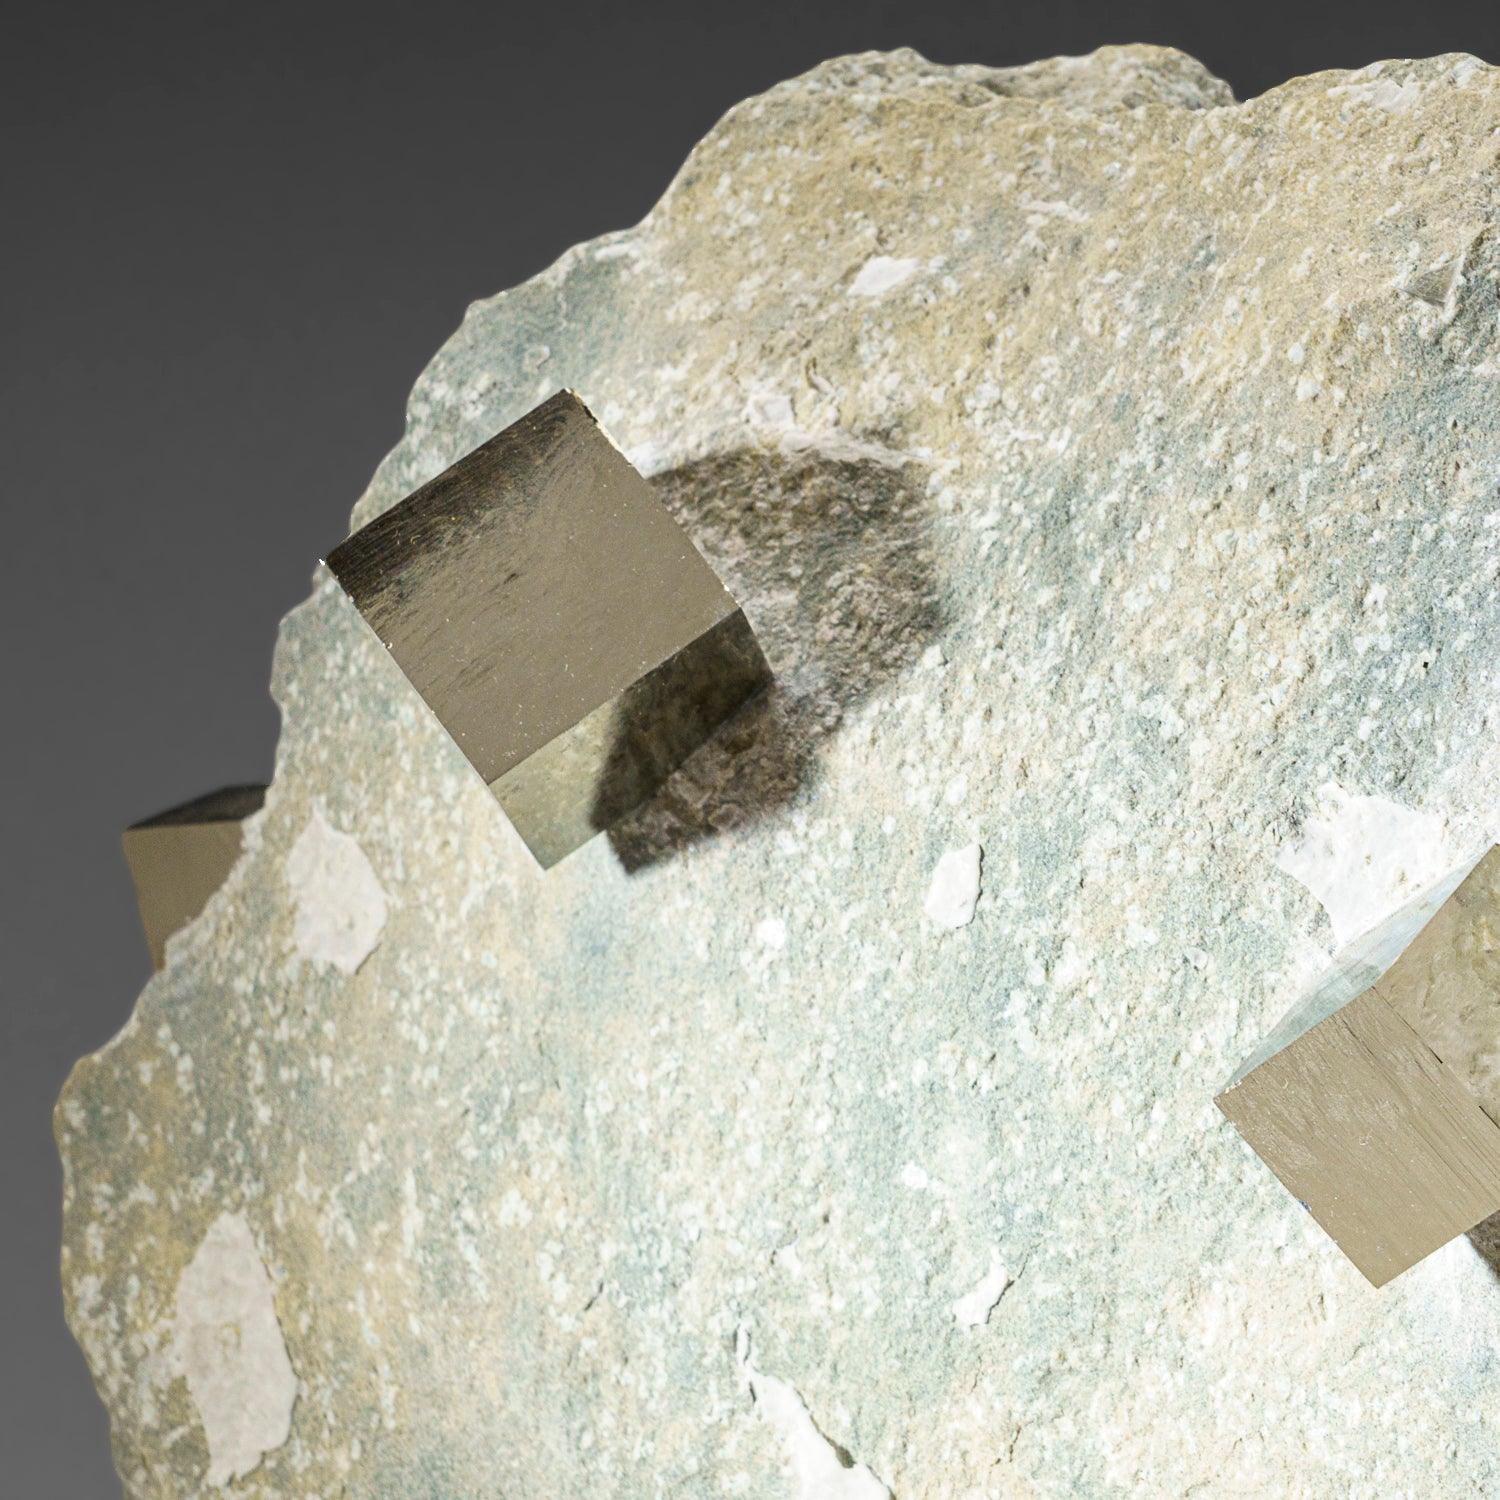 Genuine Pyrite Cubes on Basalt From Navajun, Spain (13 lbs)